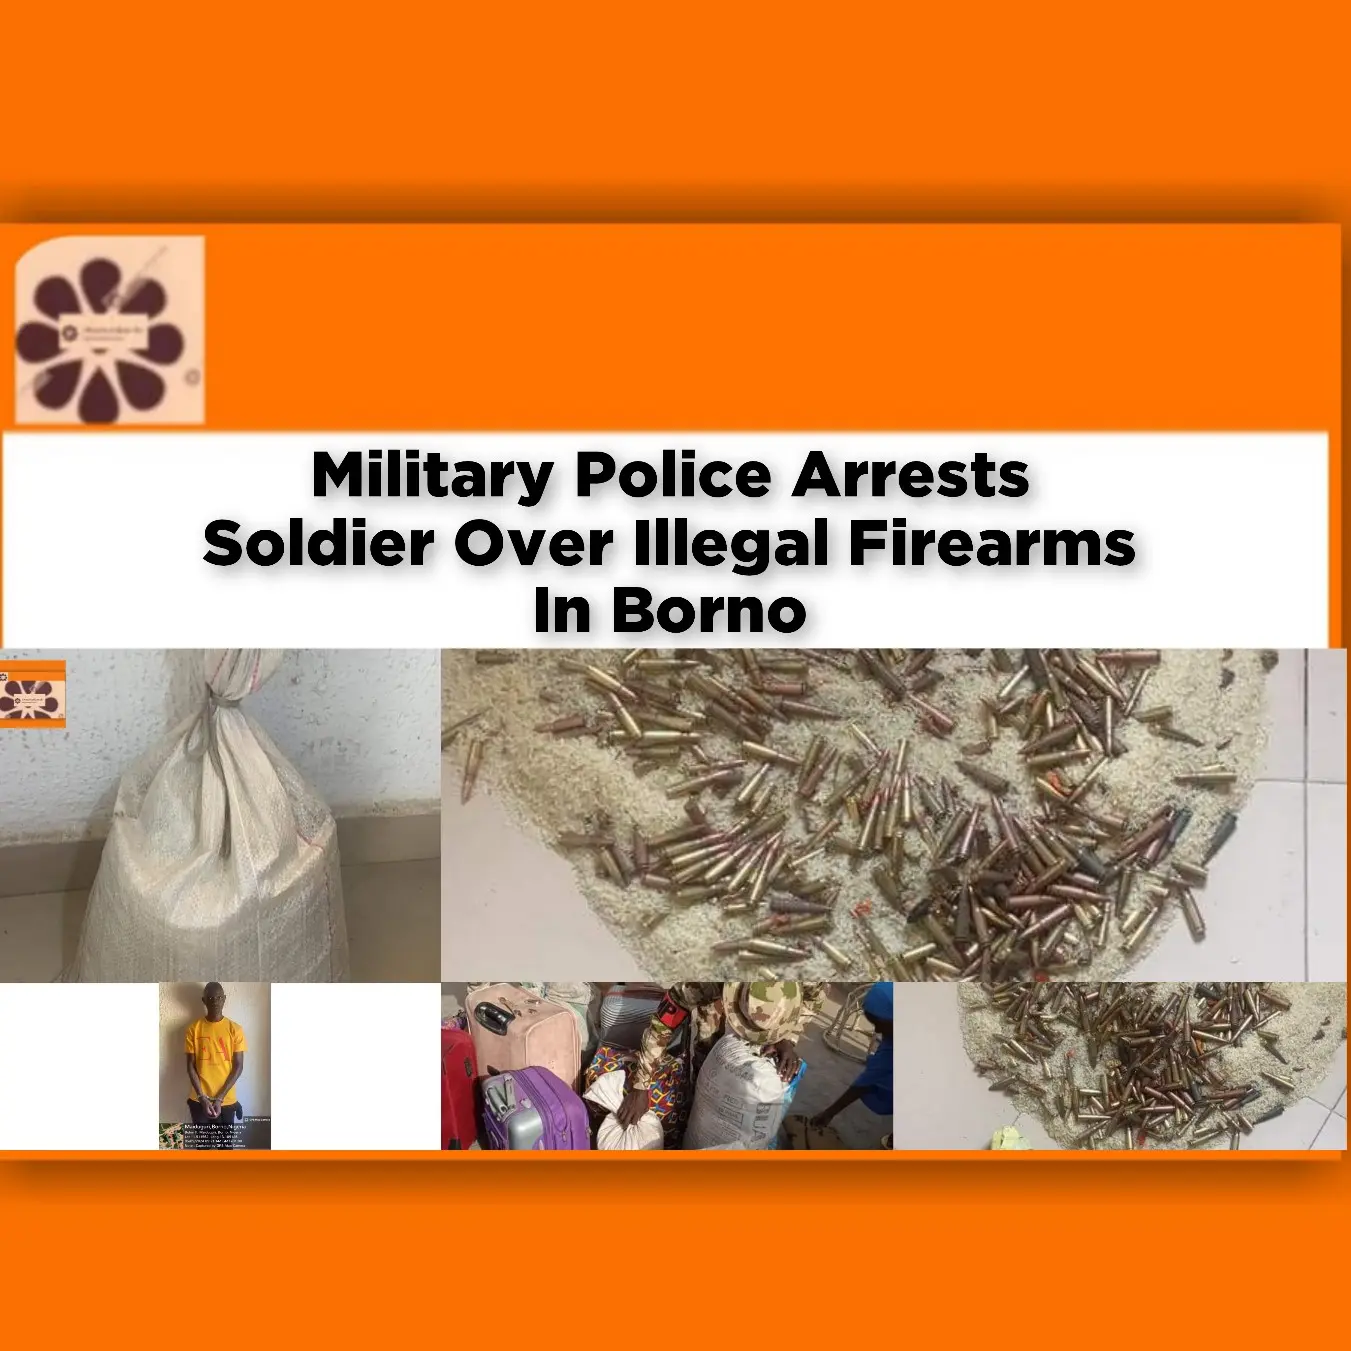 Military Police Arrests Soldier Over Illegal Firearms In Borno ~ OsazuwaAkonedo #Borno #Chibok #IllegalFirearms #Kaduna #Maiduguri #Police #Soldier